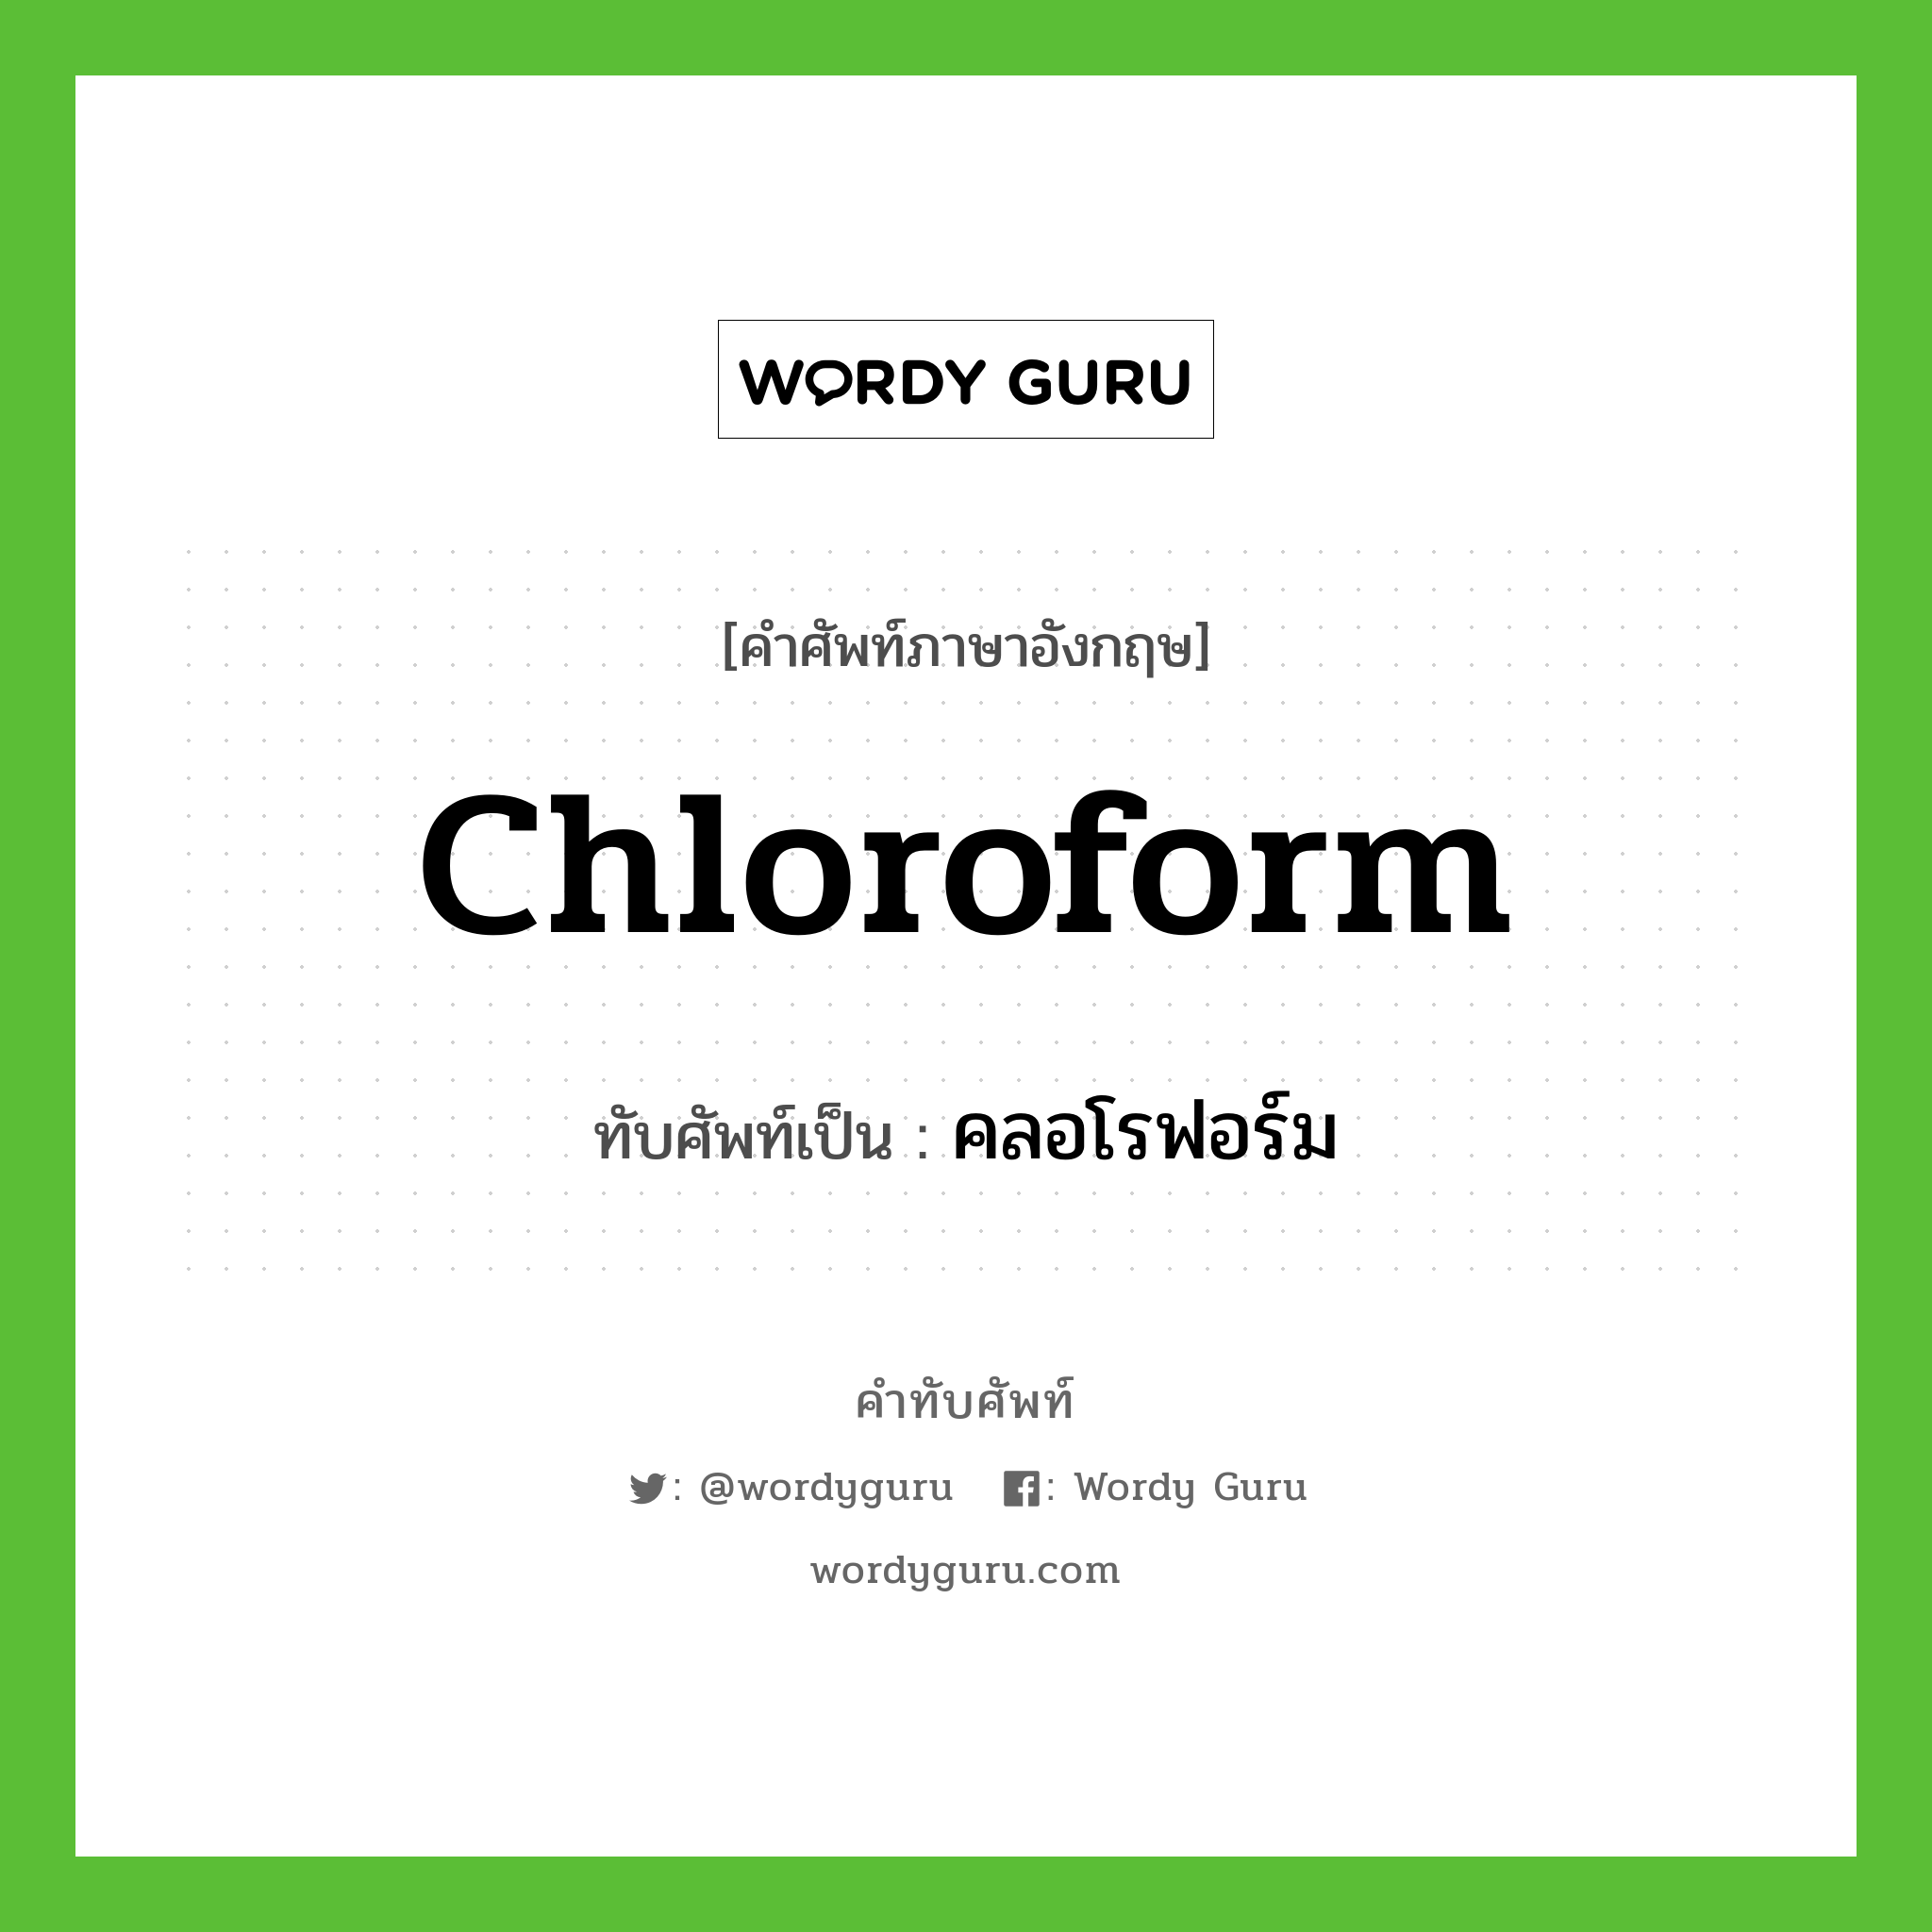 chloroform เขียนเป็นคำไทยว่าอะไร?, คำศัพท์ภาษาอังกฤษ chloroform ทับศัพท์เป็น คลอโรฟอร์ม